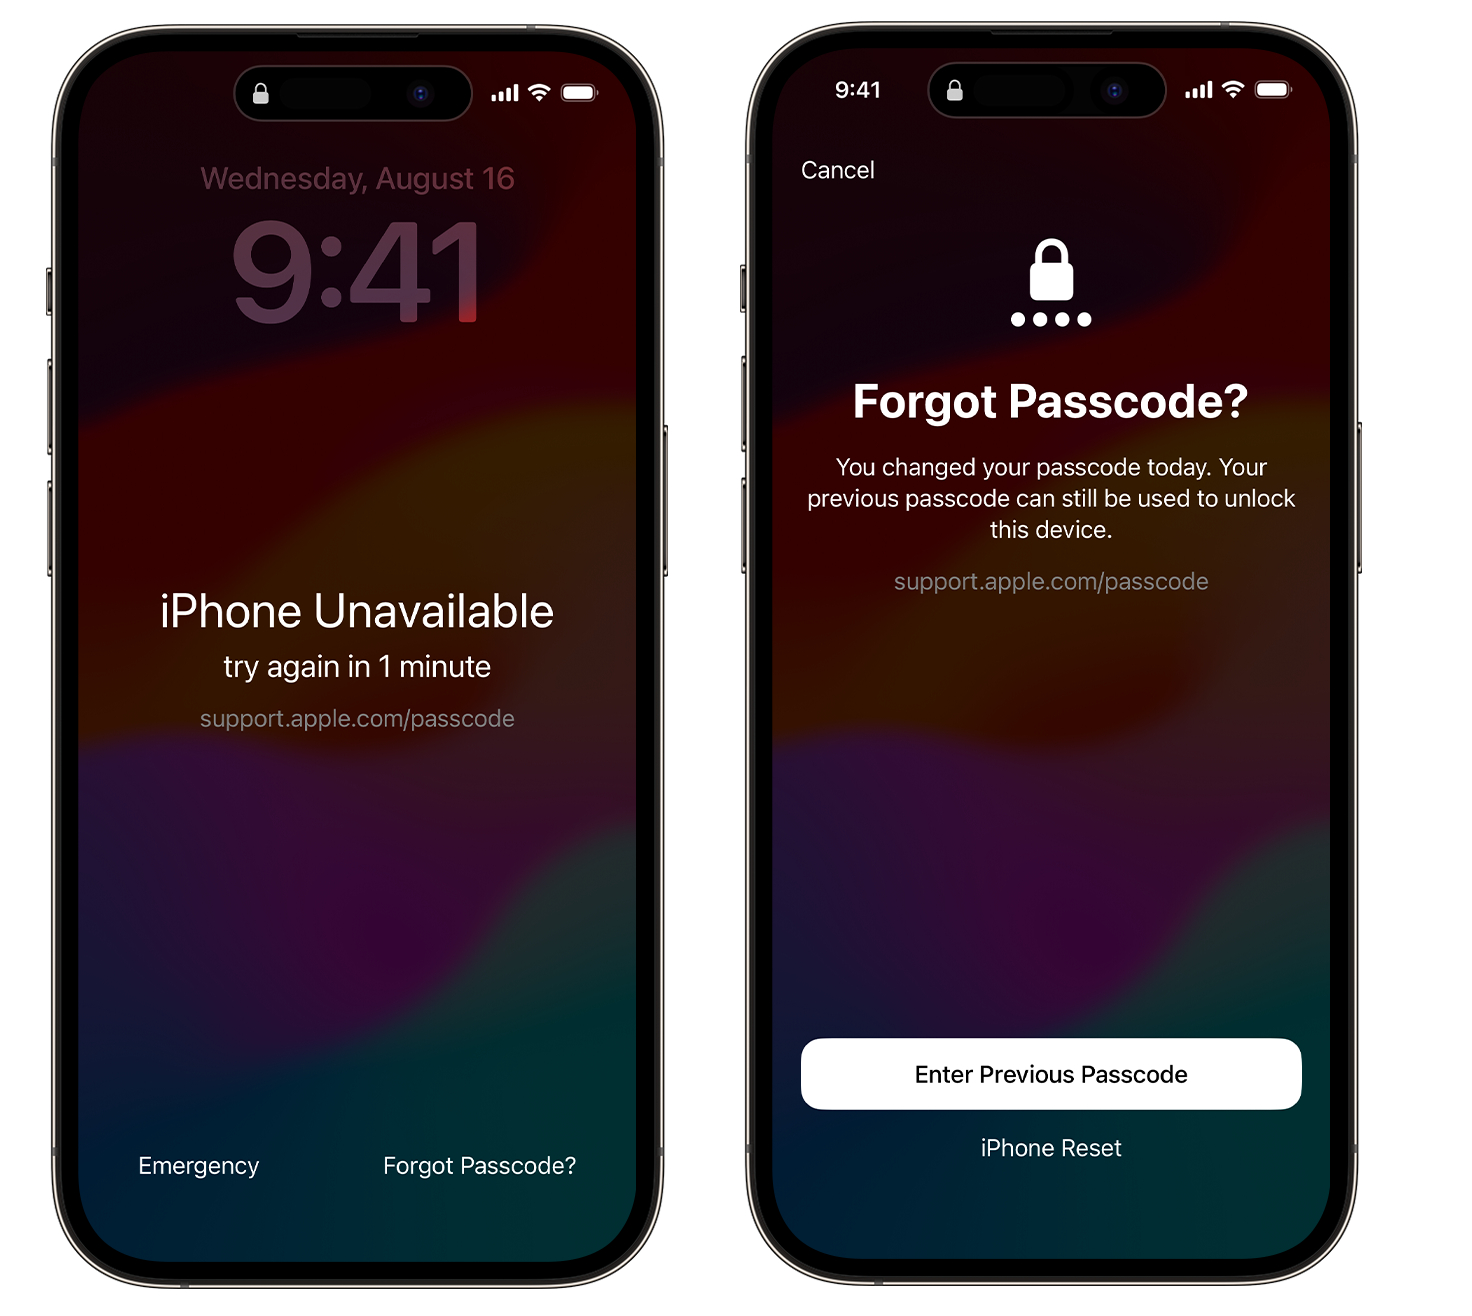 iphone忘記螢幕密碼怎麼辦，3種免電腦解鎖方法! - 已停用iPhone - 敗家達人推薦